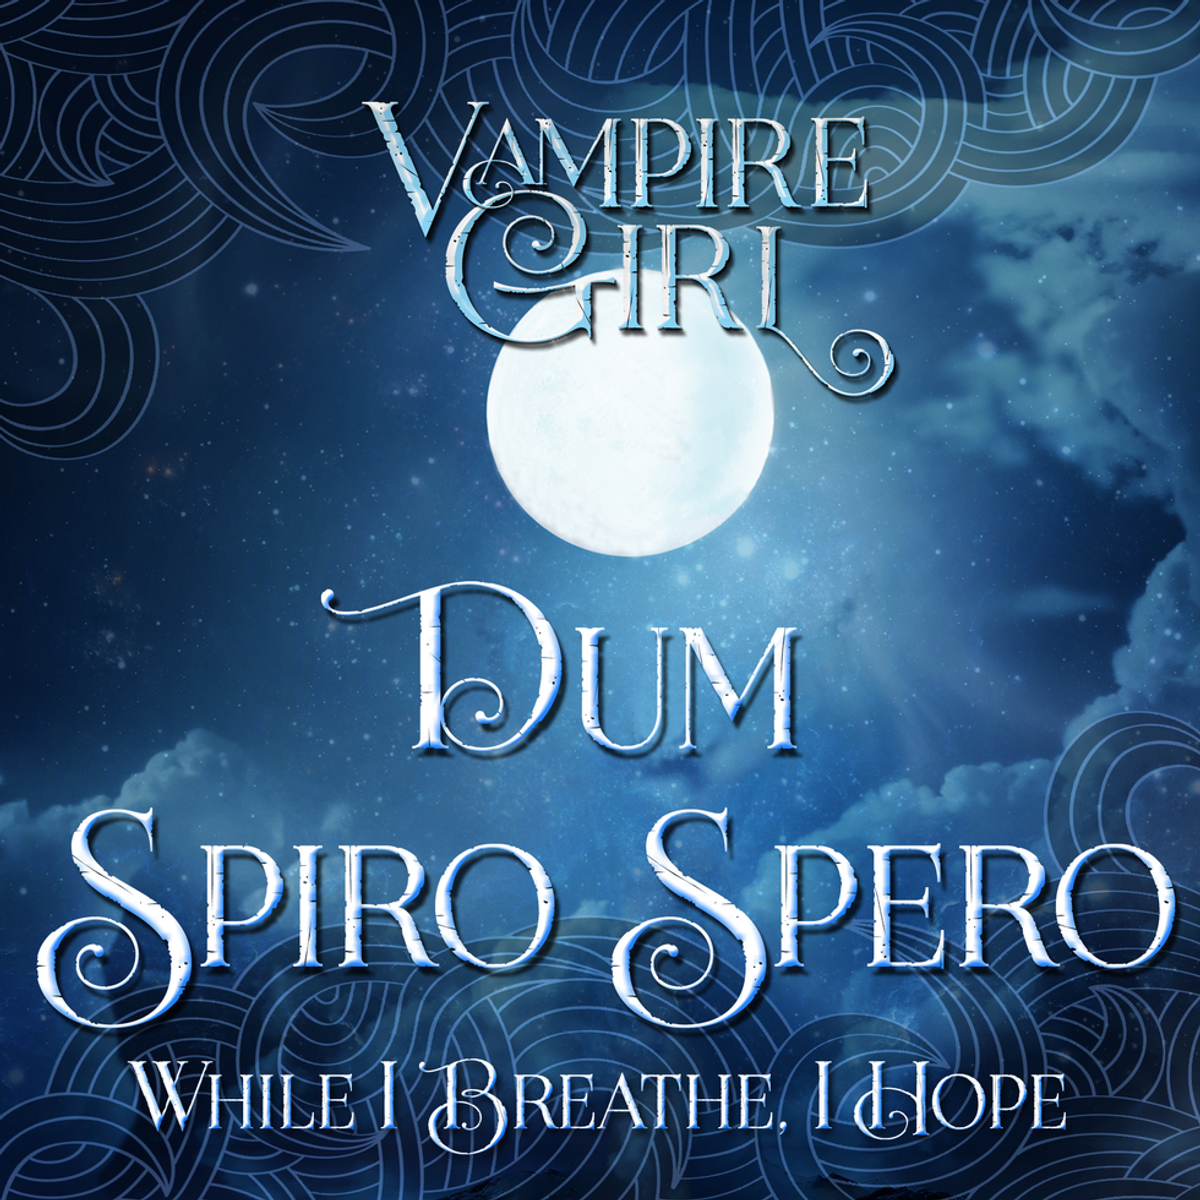 Vampire Girl; Dum Spiro Spero